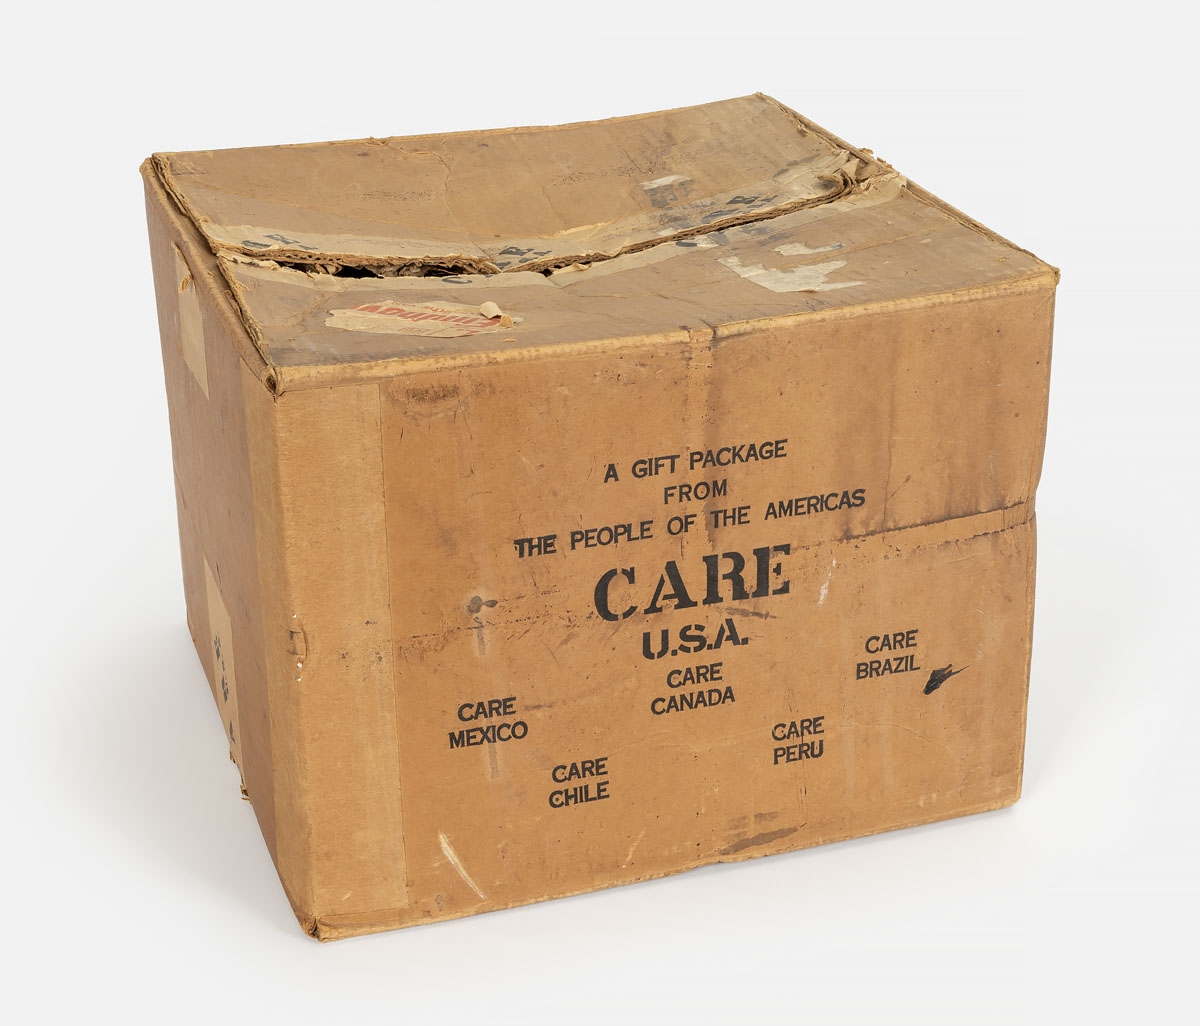 De kartonnen doos van C.A.R.E. uit de collectie van het Vrijheidsmuseum